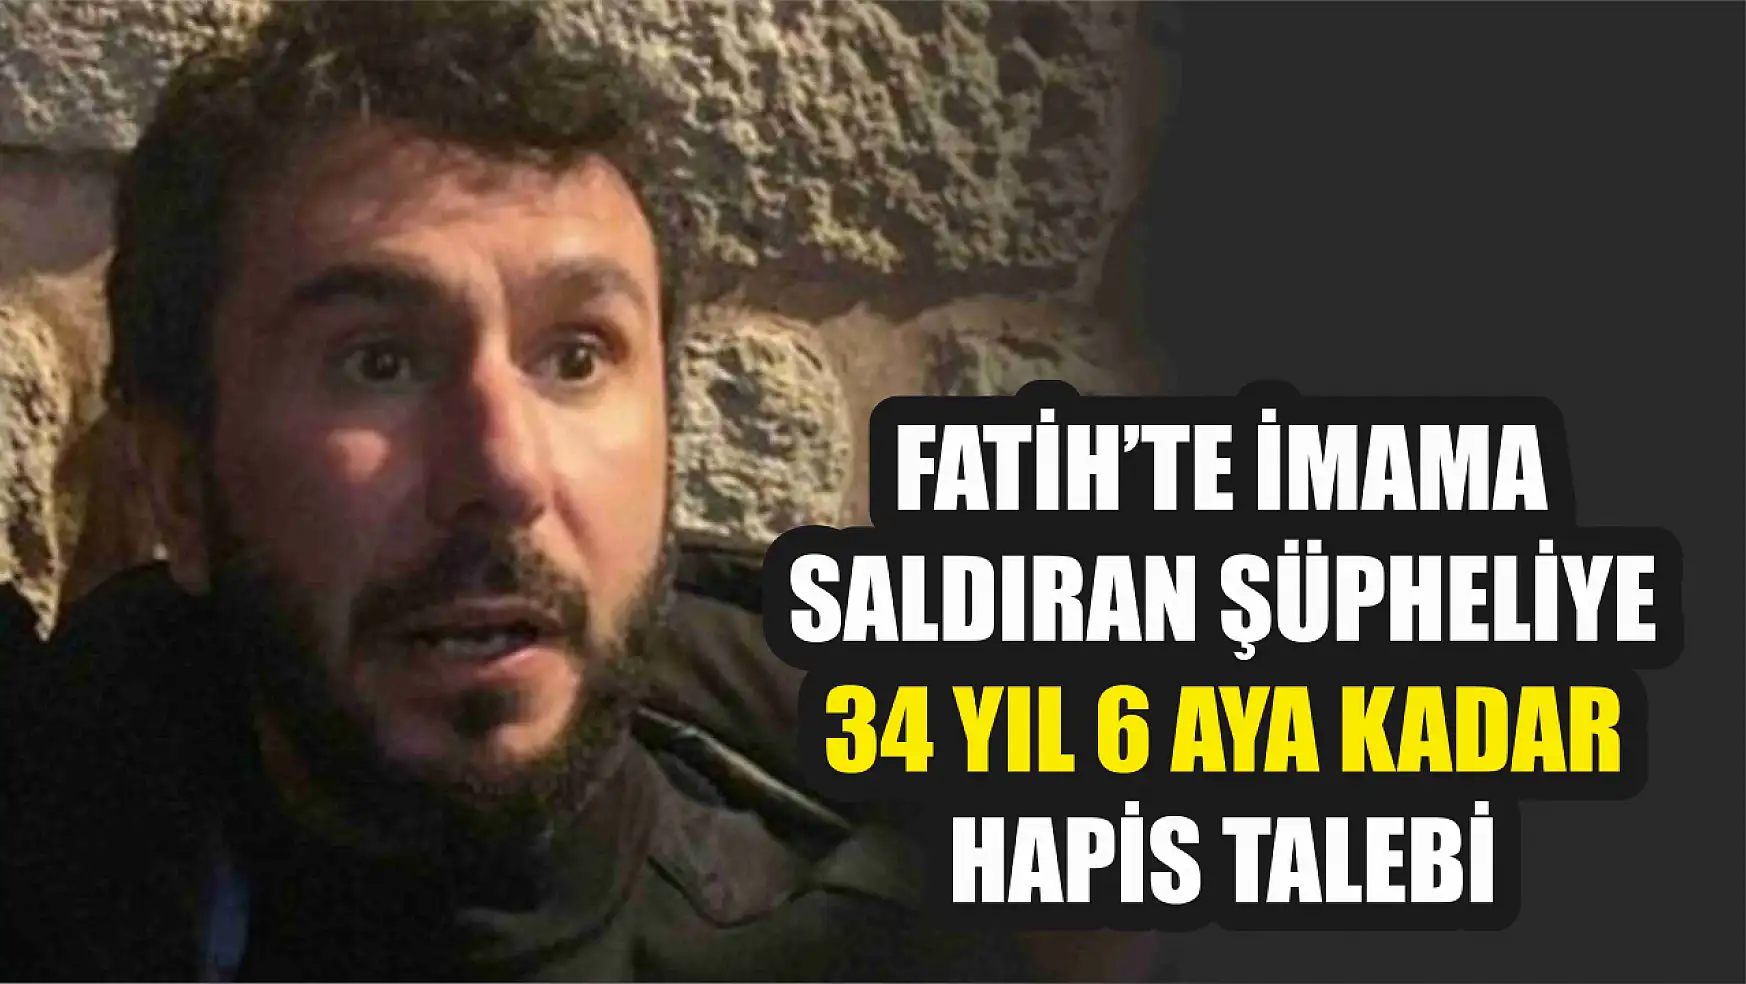 Fatih'te imama saldıran şüpheliye 34 yıl 6 aya kadar hapis talebi